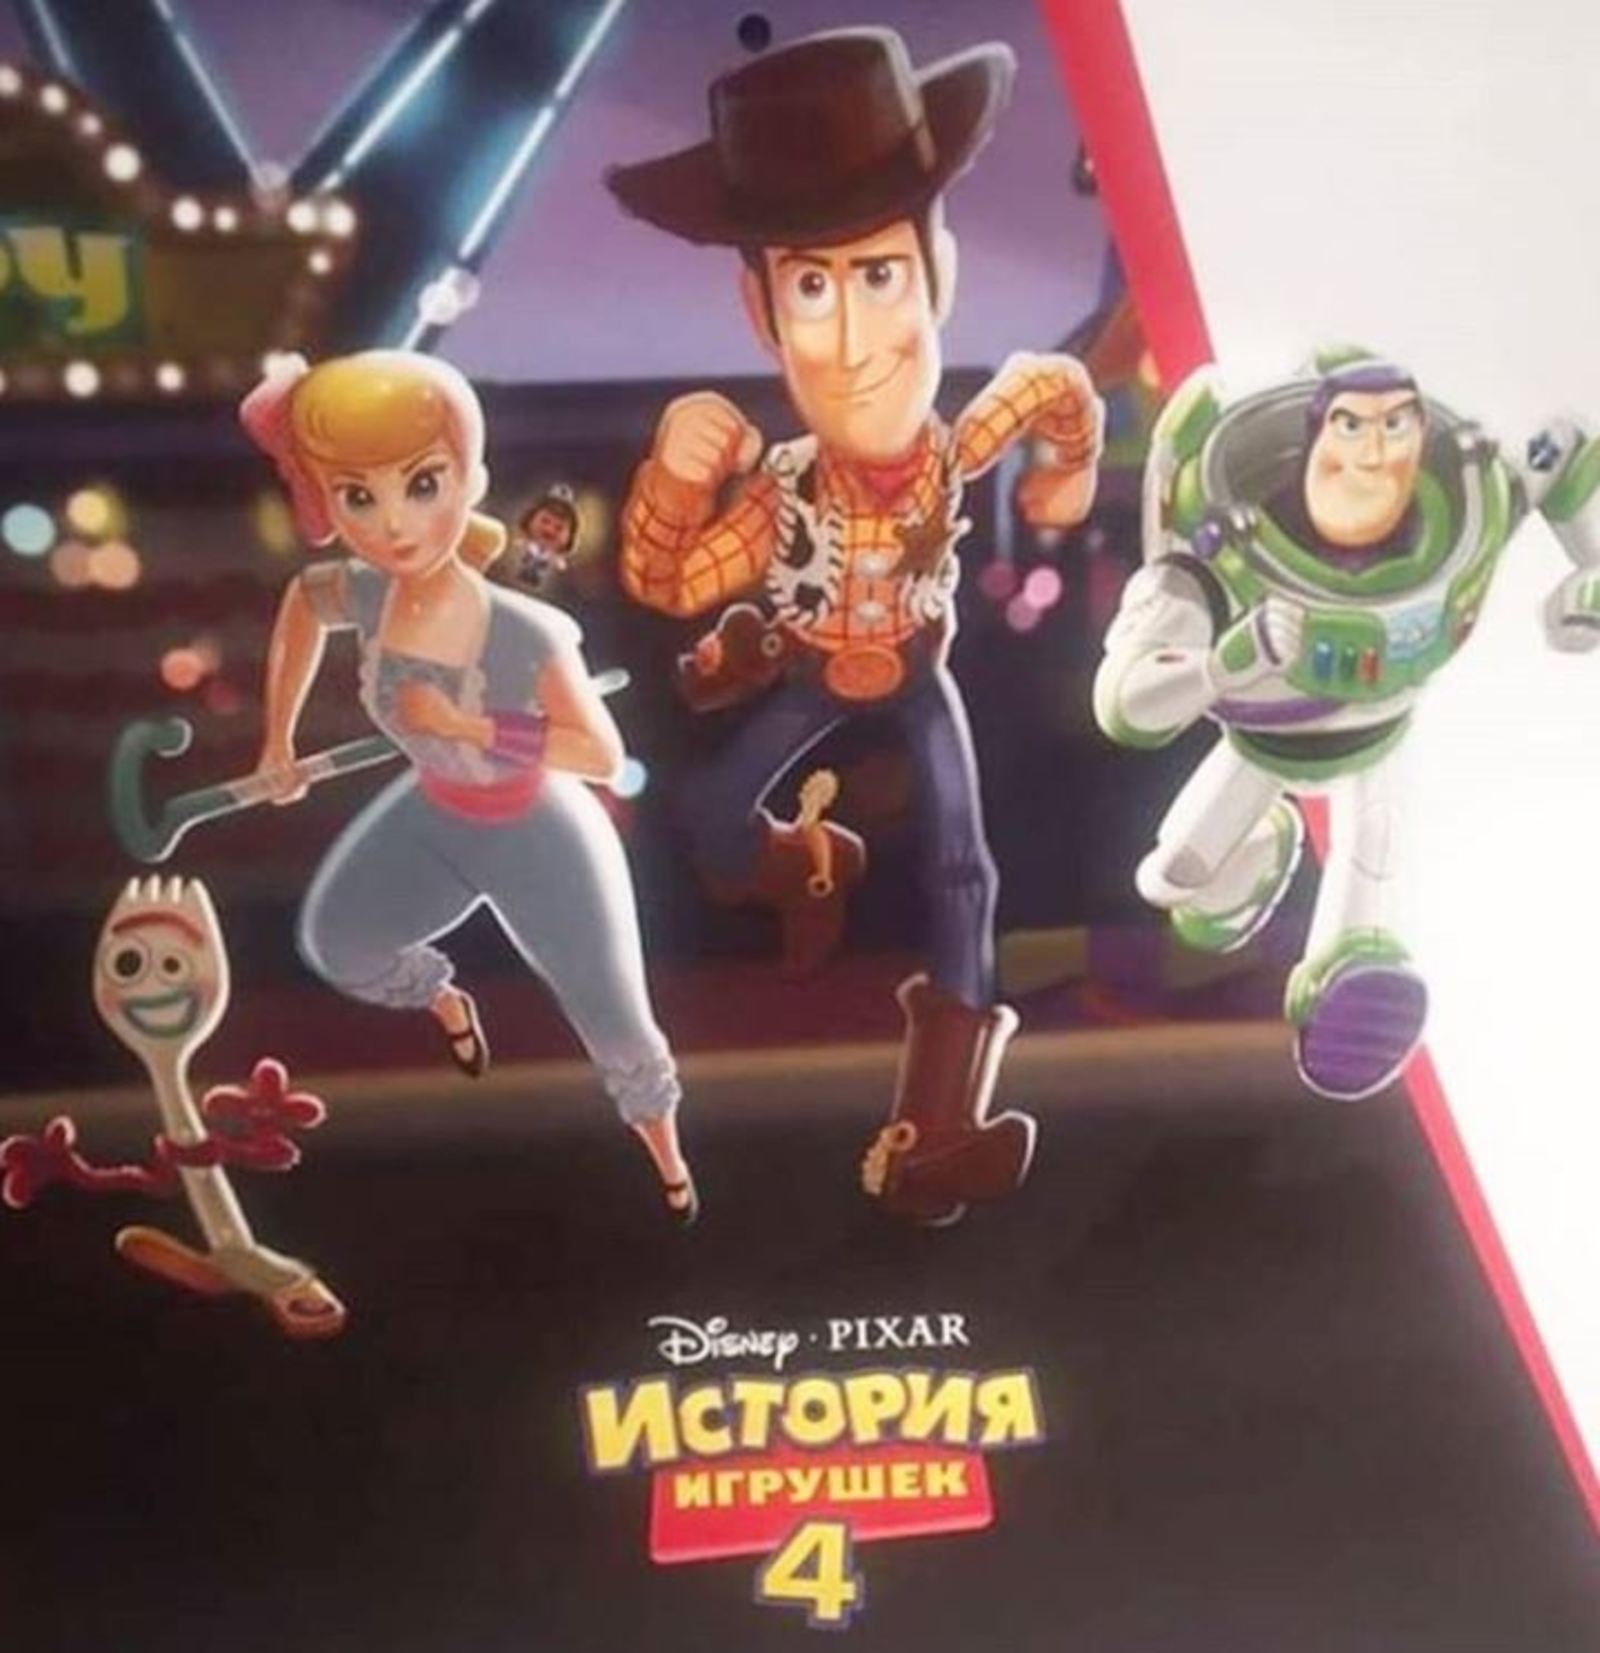 Póster. Circula en redes el posible nuevo póster de Toy Story 4, cinta animada que llegará a los cines en junio. (ESPECIAL)